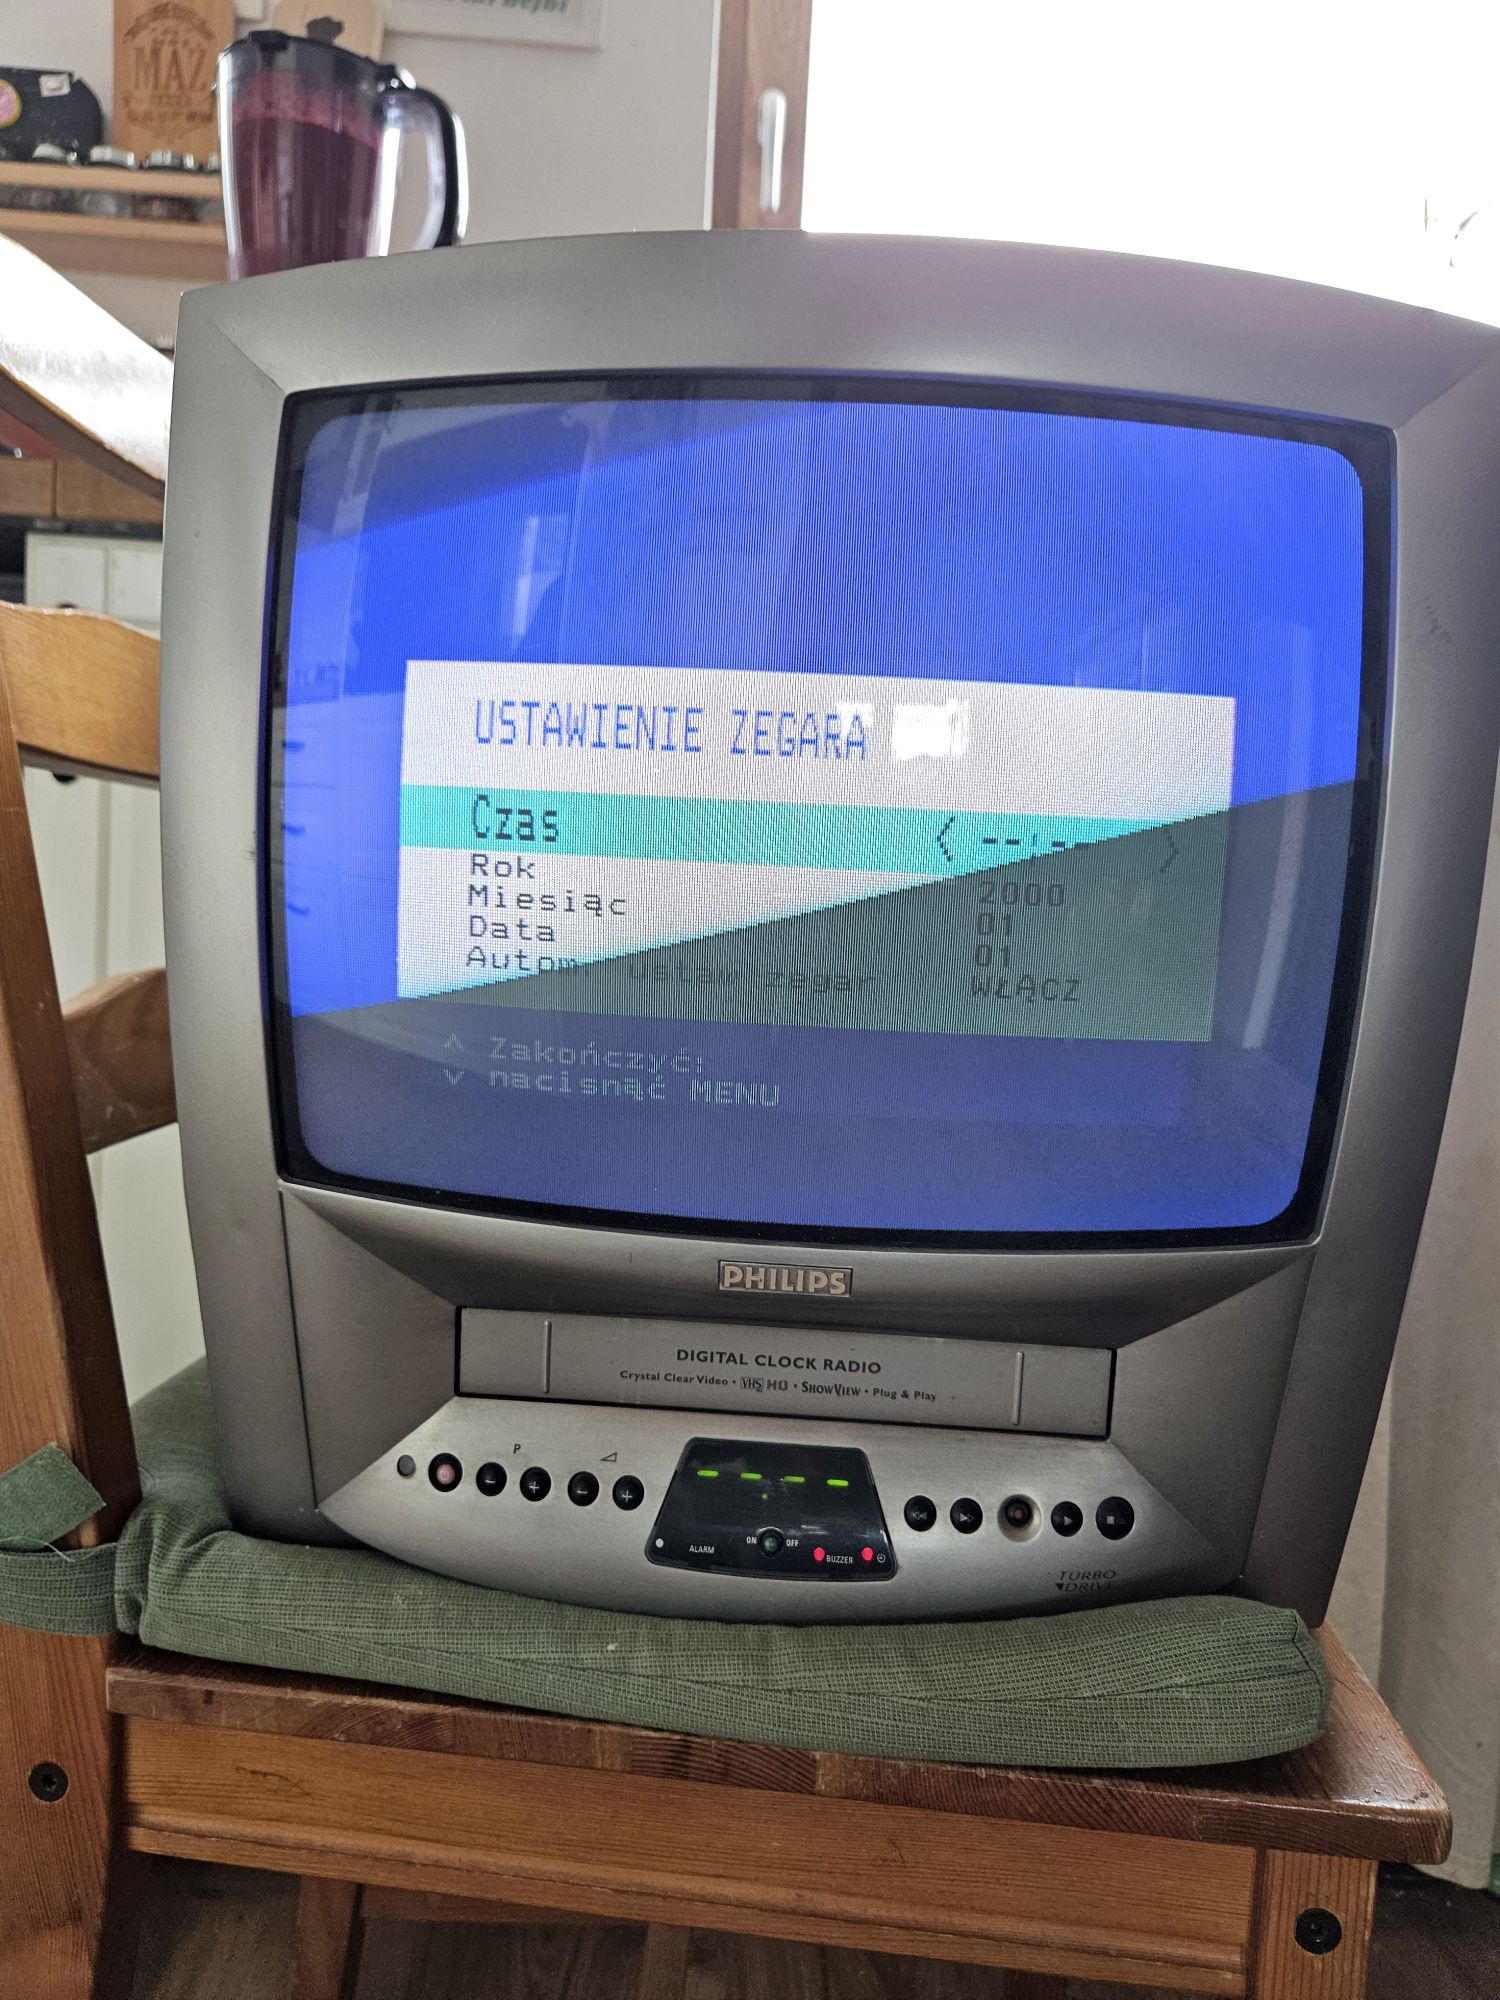 Telewizor Philips z VHS 14 cali bez dekodera dvbt